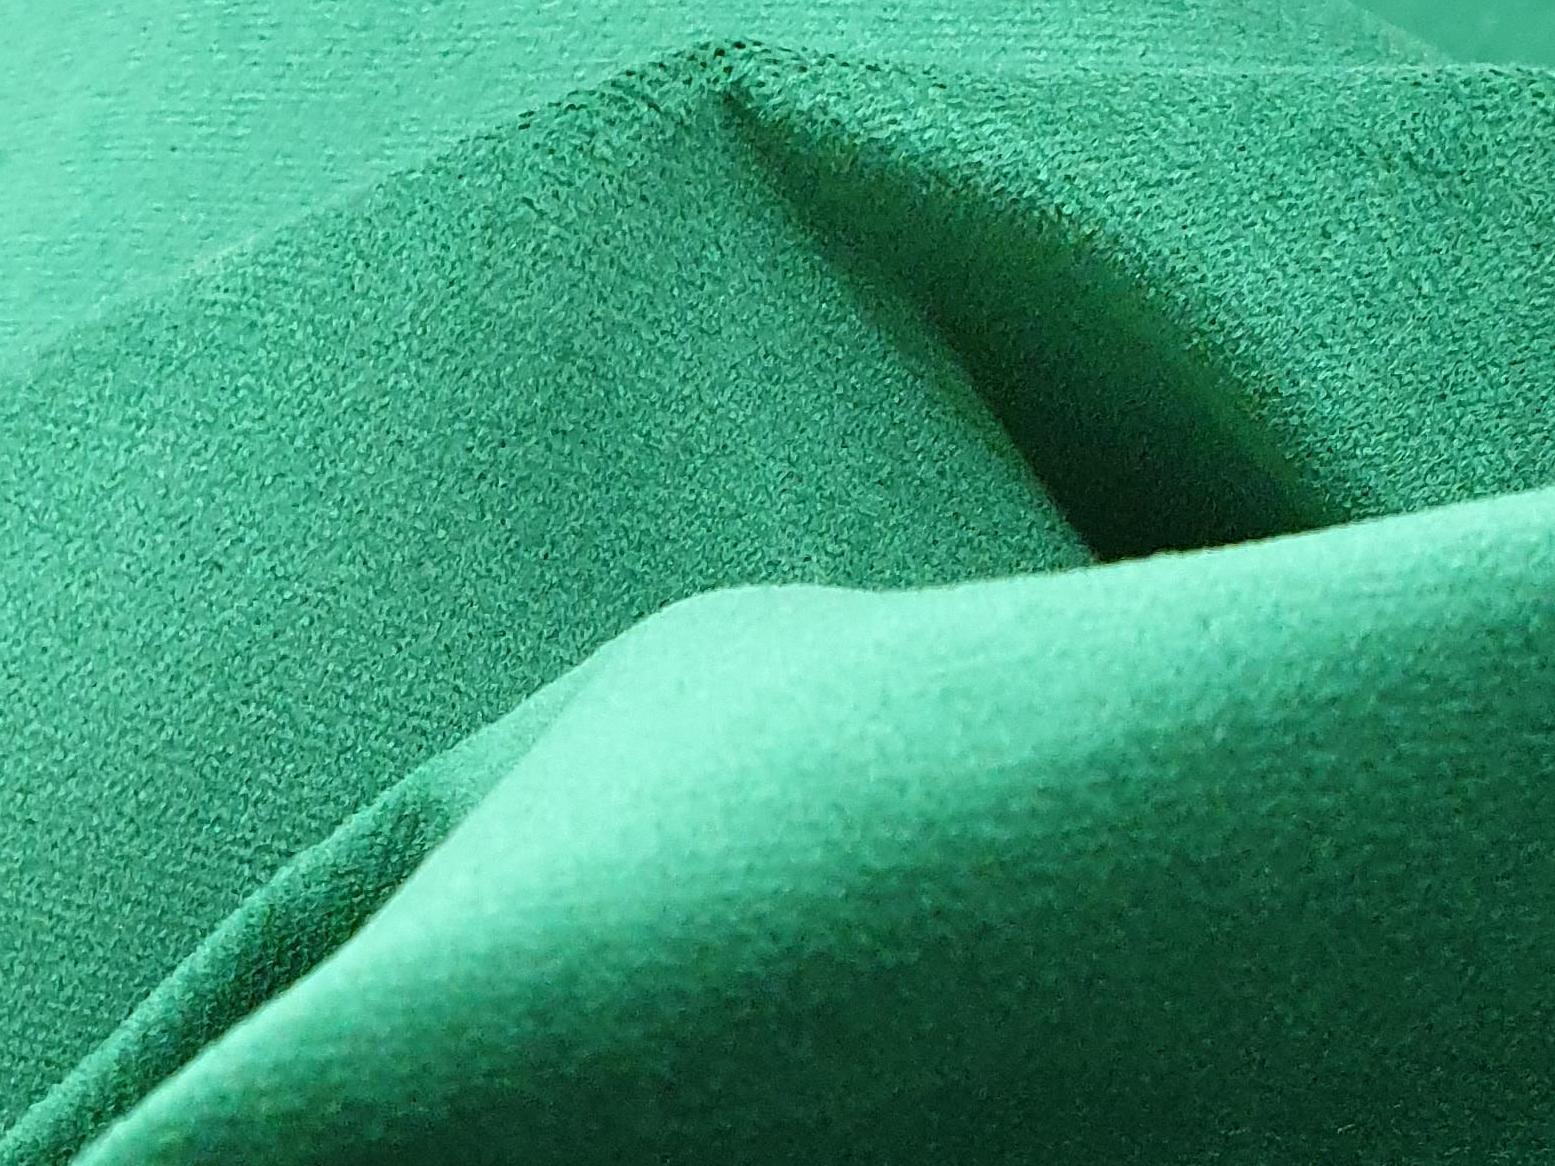 Интерьерная кровать Лотос 160 (Зеленый)